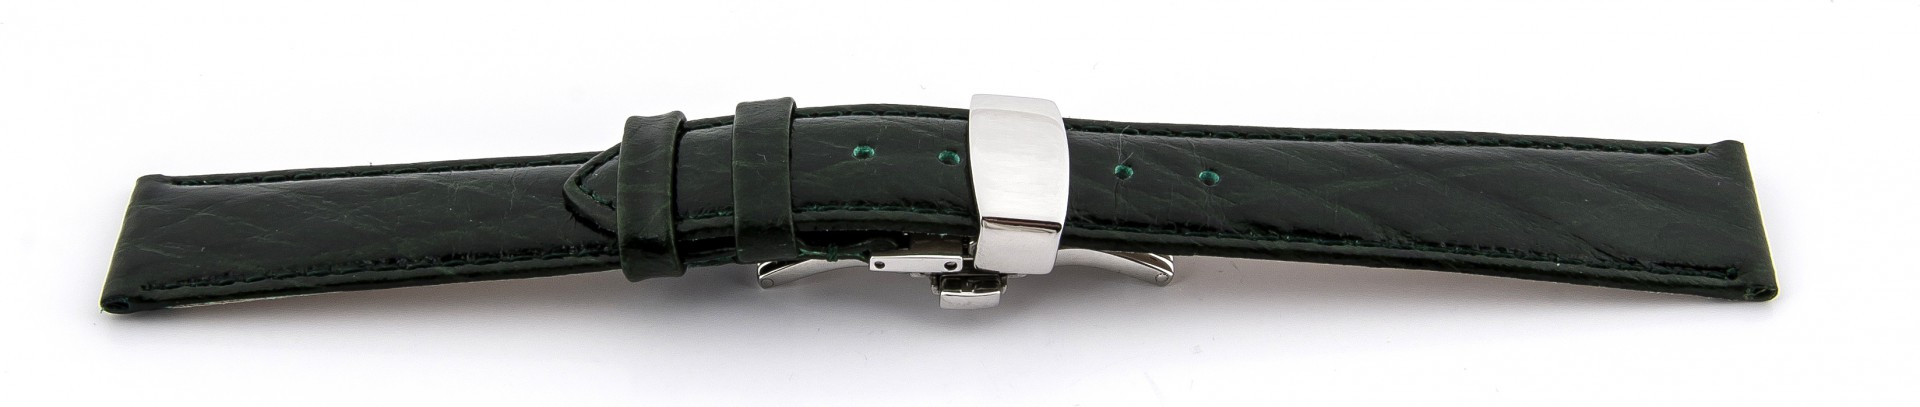   Uhrenarmband Bark 71S Butterfly-Schließe - Leder, geprägt - dunkelgrün mit grüner Naht 